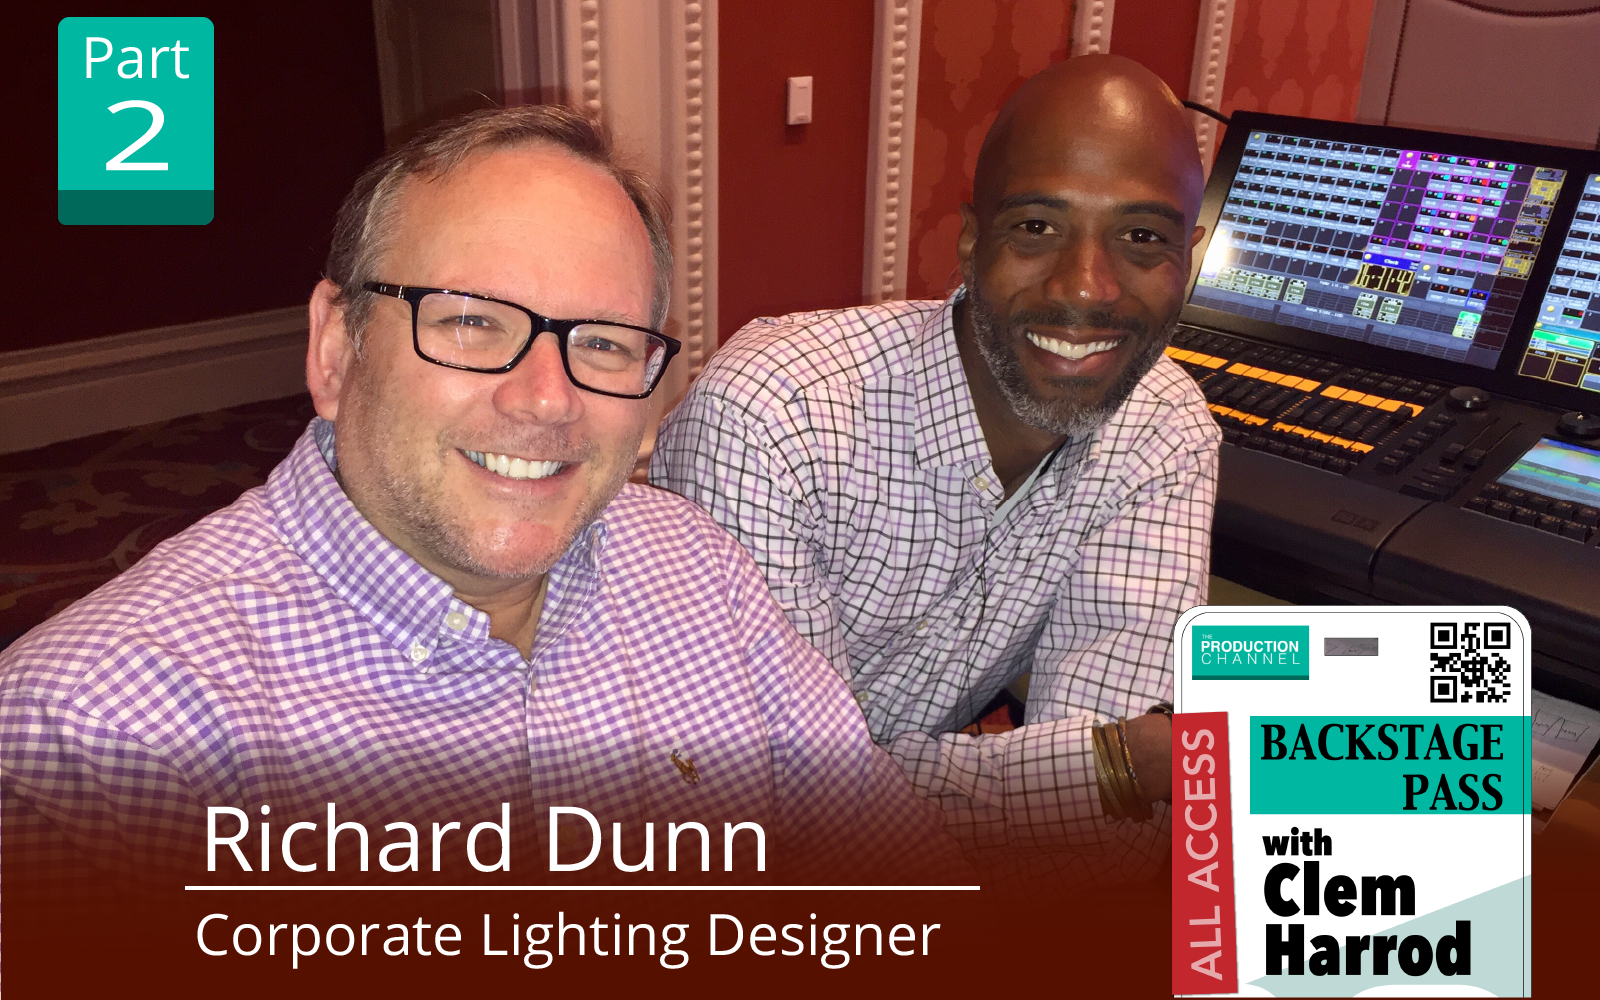 Richard Dunn Corporate lighting designer